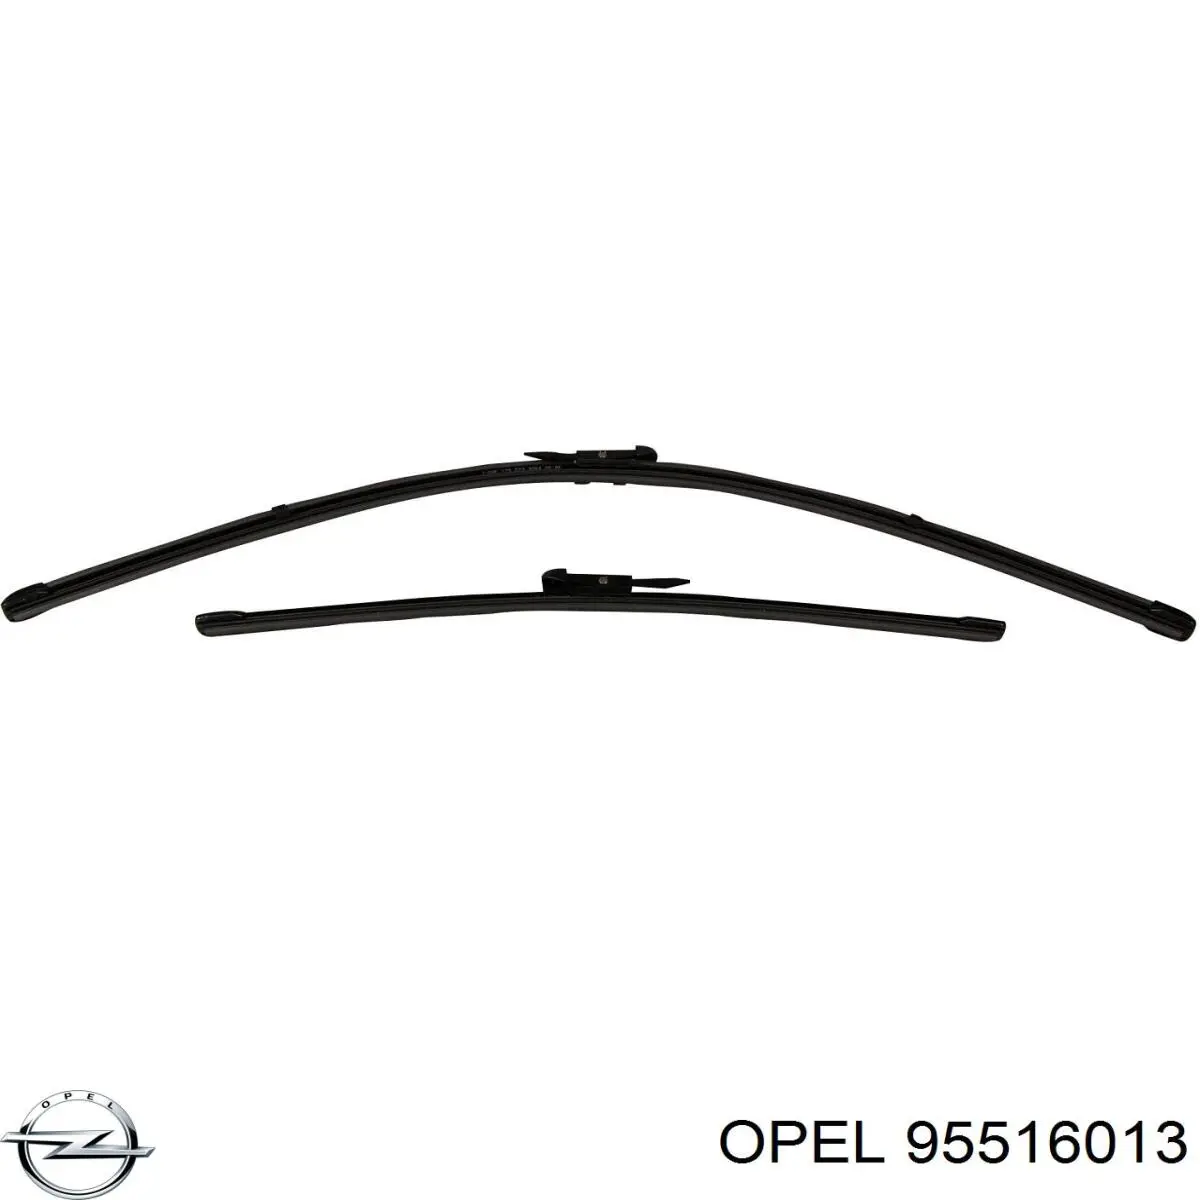 Opel щітка-двірник лобового скла, комплект з 2-х шт.